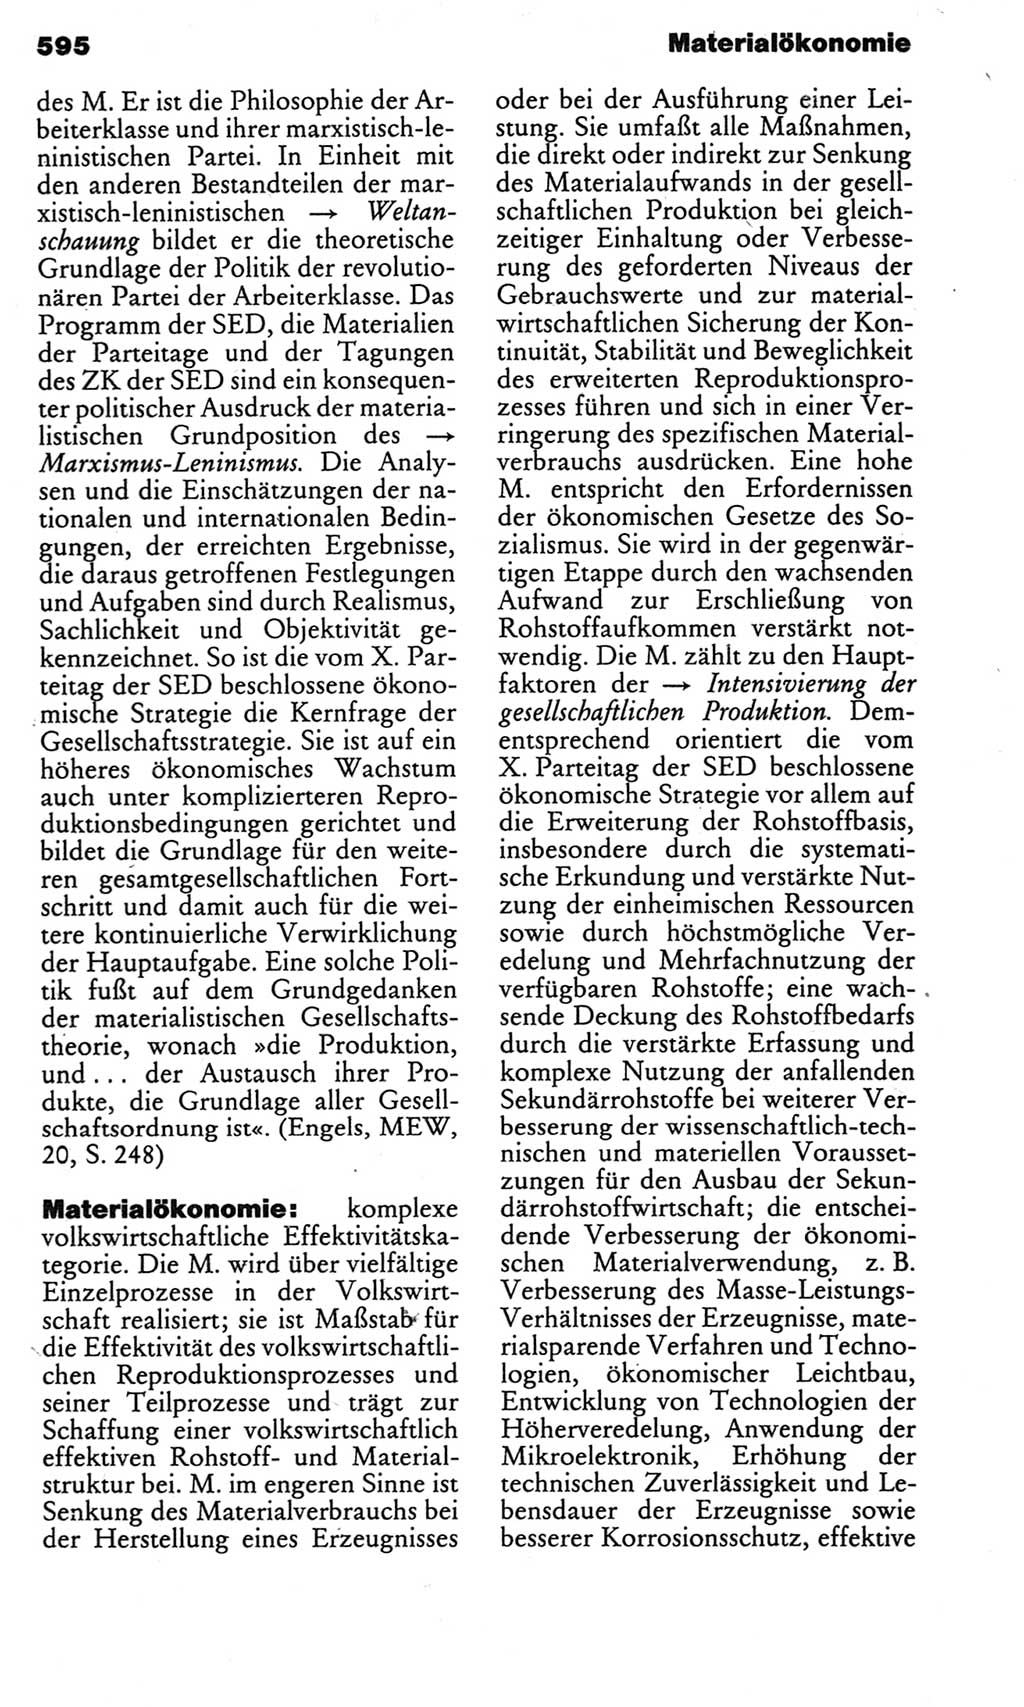 Kleines politisches Wörterbuch [Deutsche Demokratische Republik (DDR)] 1983, Seite 595 (Kl. pol. Wb. DDR 1983, S. 595)